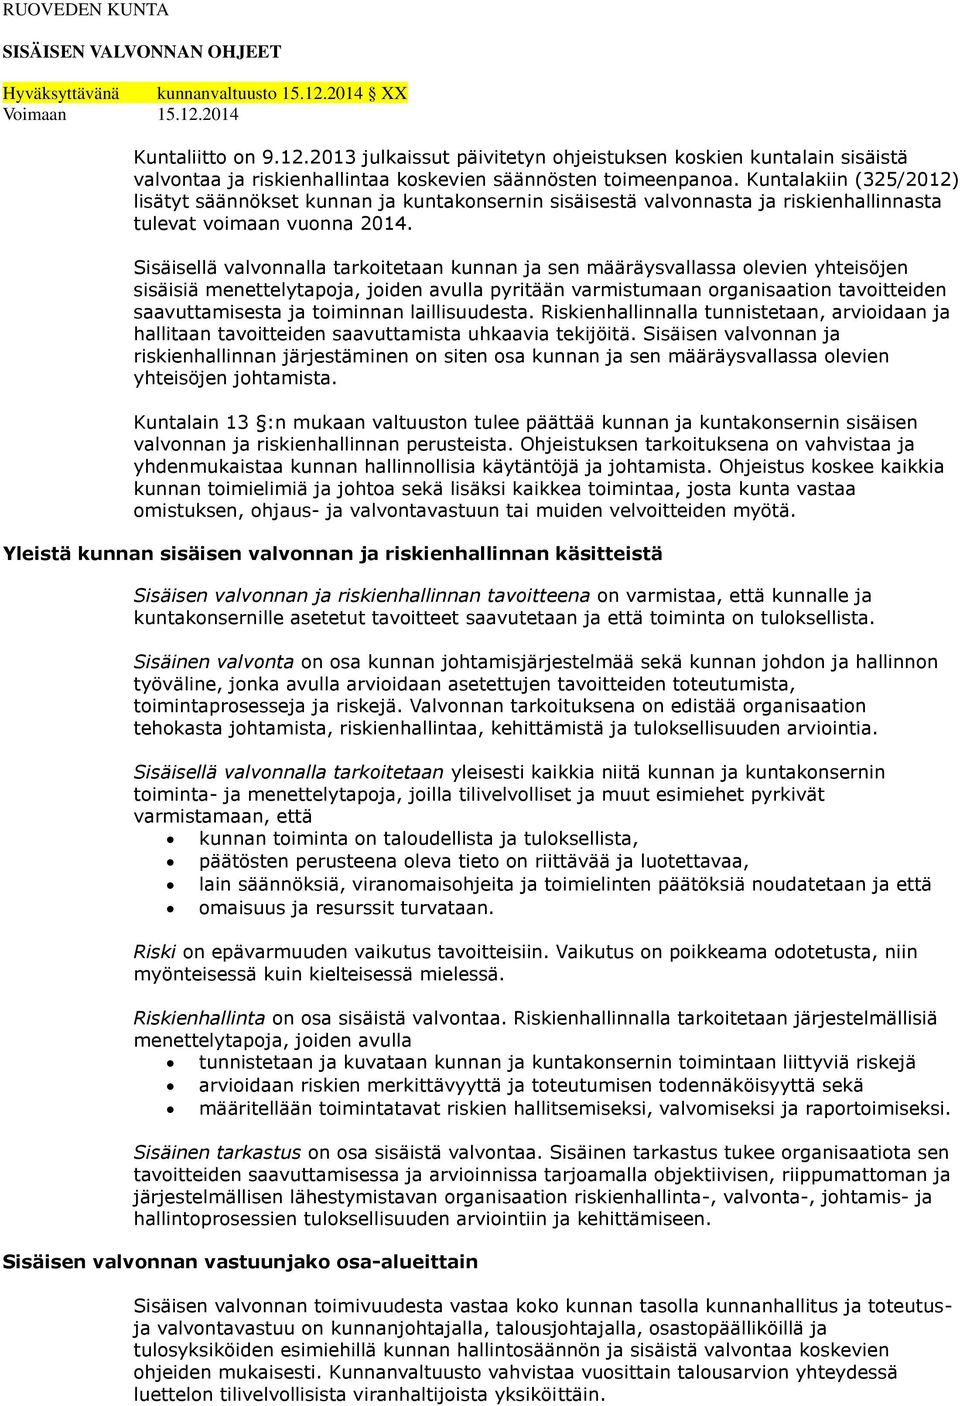 Kuntalakiin (325/2012) lisätyt säännökset kunnan ja kuntakonsernin sisäisestä valvonnasta ja riskienhallinnasta tulevat voimaan vuonna 2014.